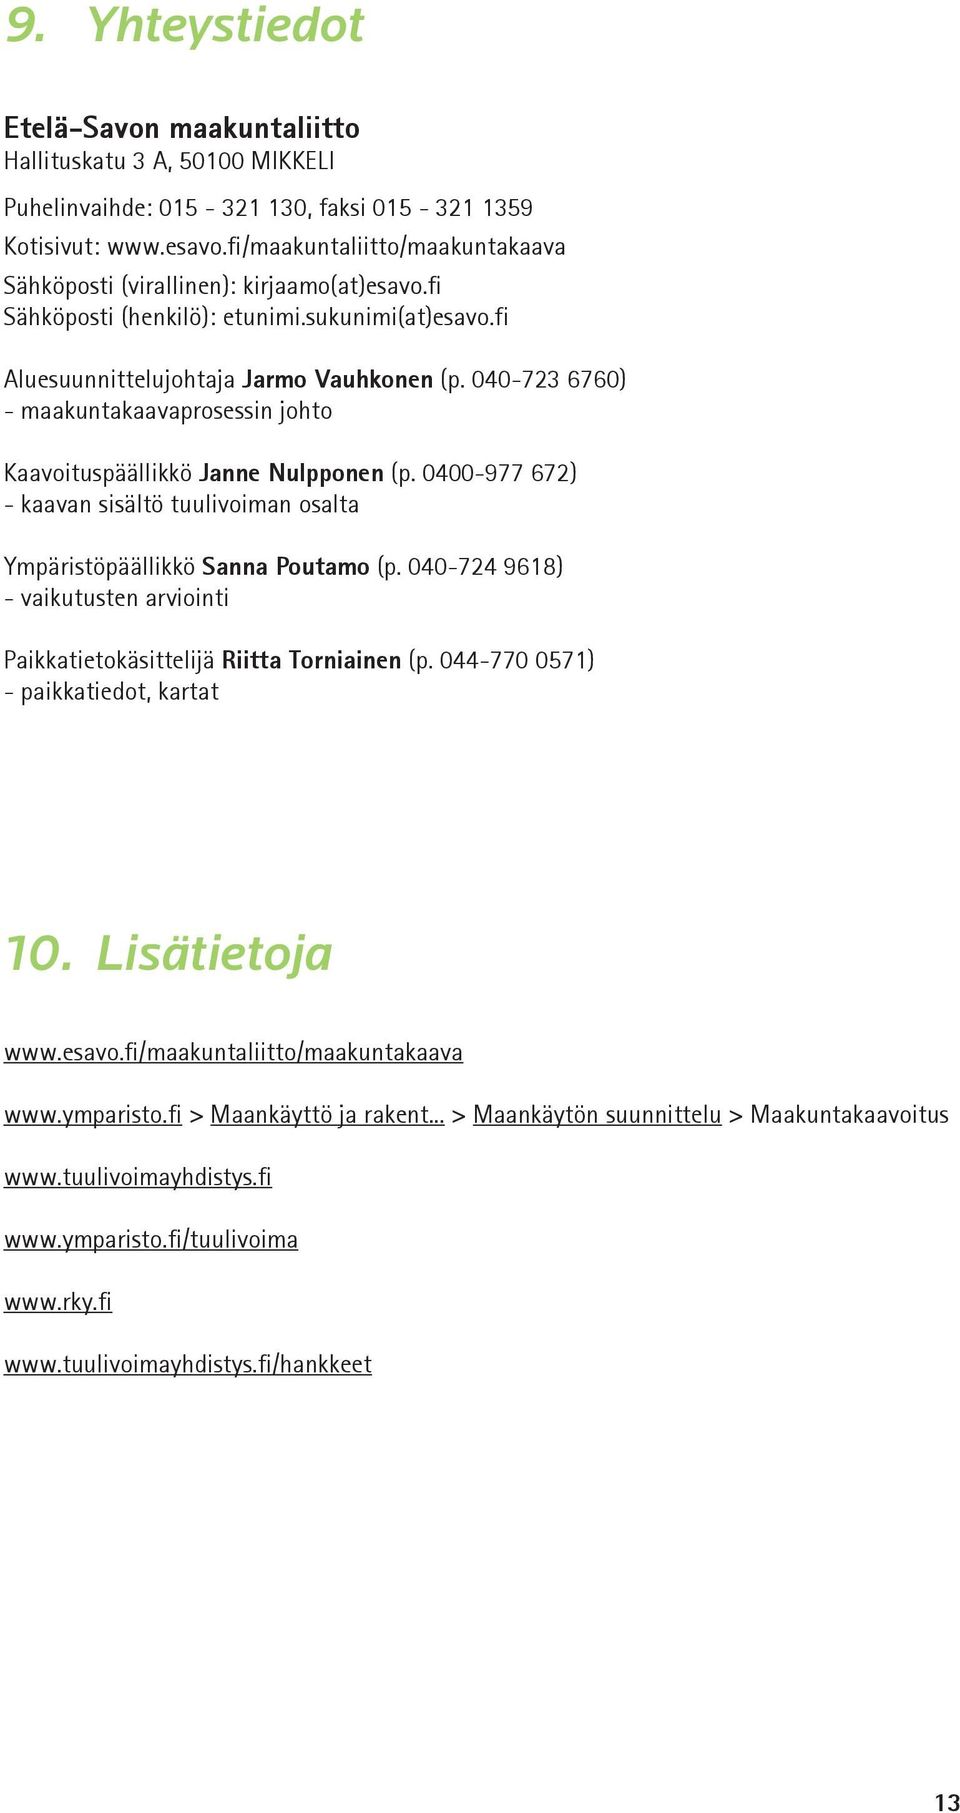 040-723 6760) - maakuntakaavaprosessin johto Kaavoituspäällikkö Janne Nulpponen (p. 0400-977 672) - kaavan sisältö tuulivoiman osalta Ympäristöpäällikkö Sanna Poutamo (p.